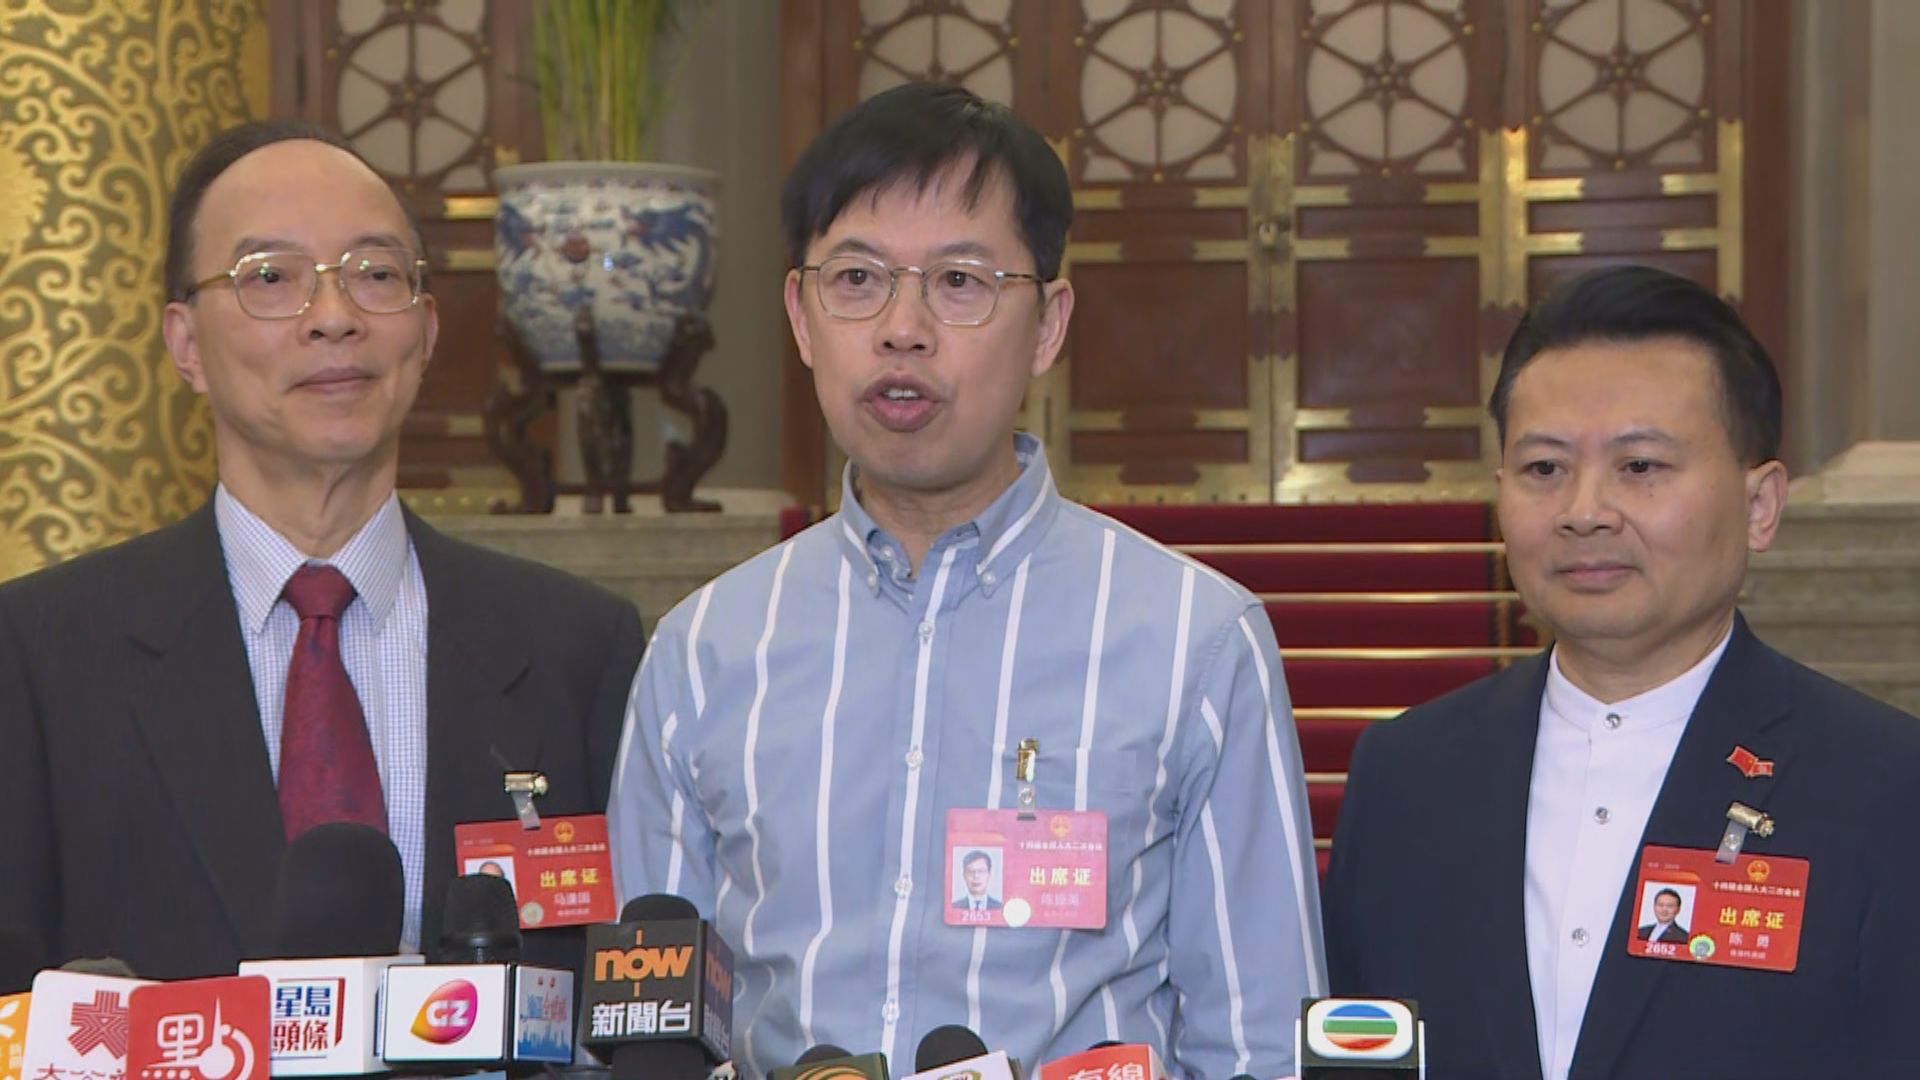 陳振英指兩會期間提出融合香港與國家金融建議 有關部門一兩日即初步回應